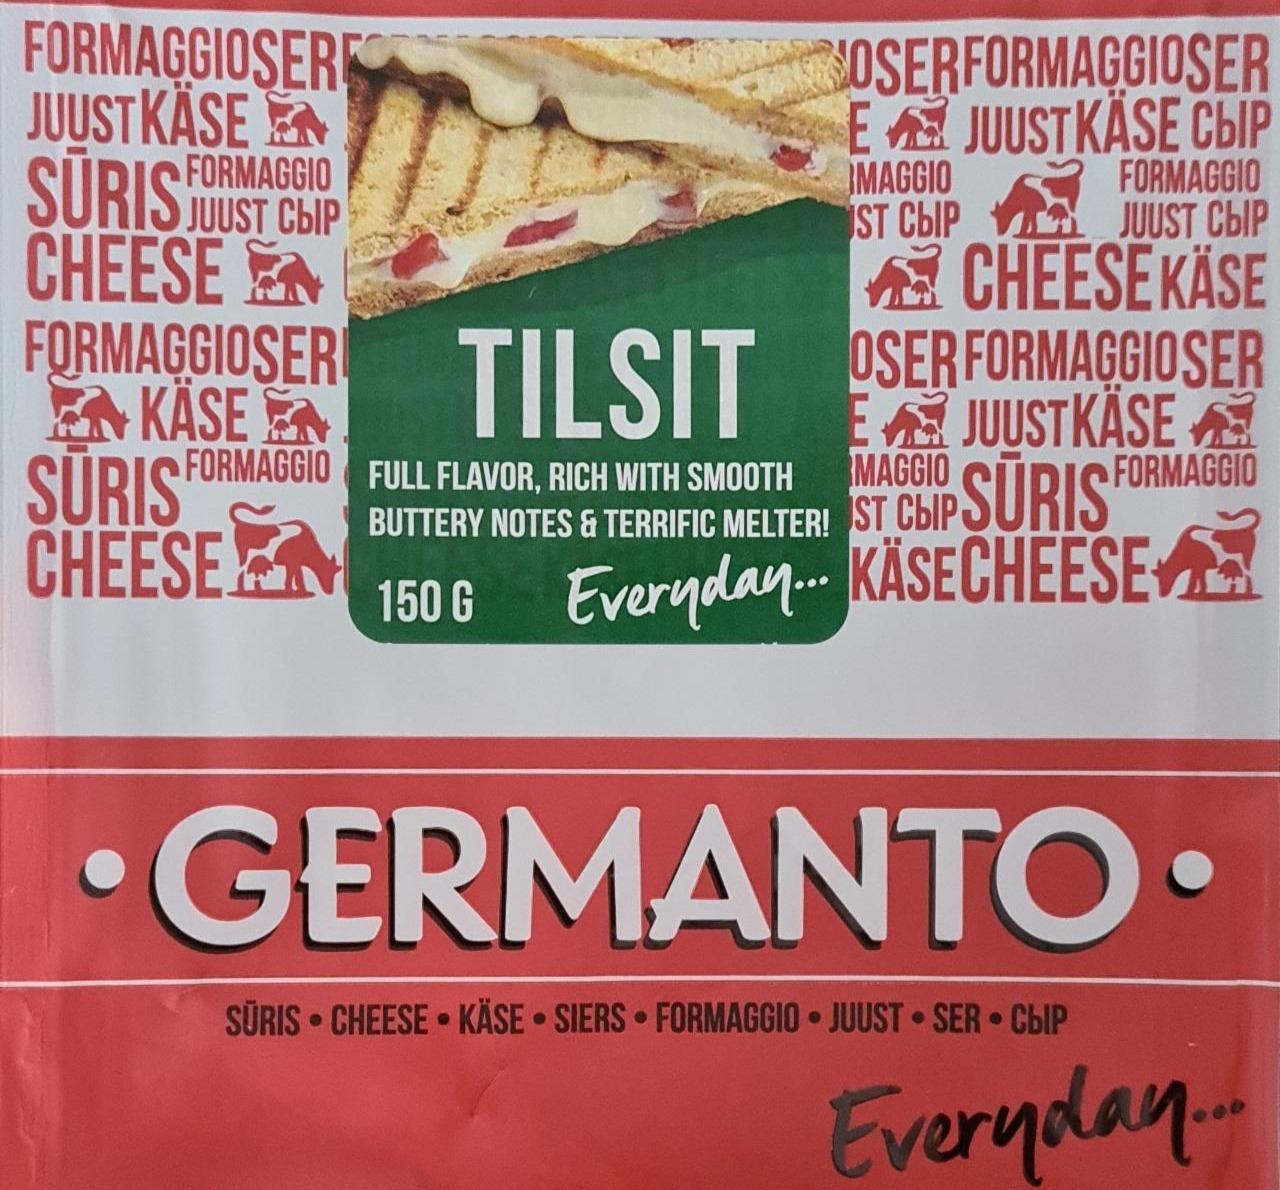 Фото - сыр нарезаный тильзитский Tilsit Germantas